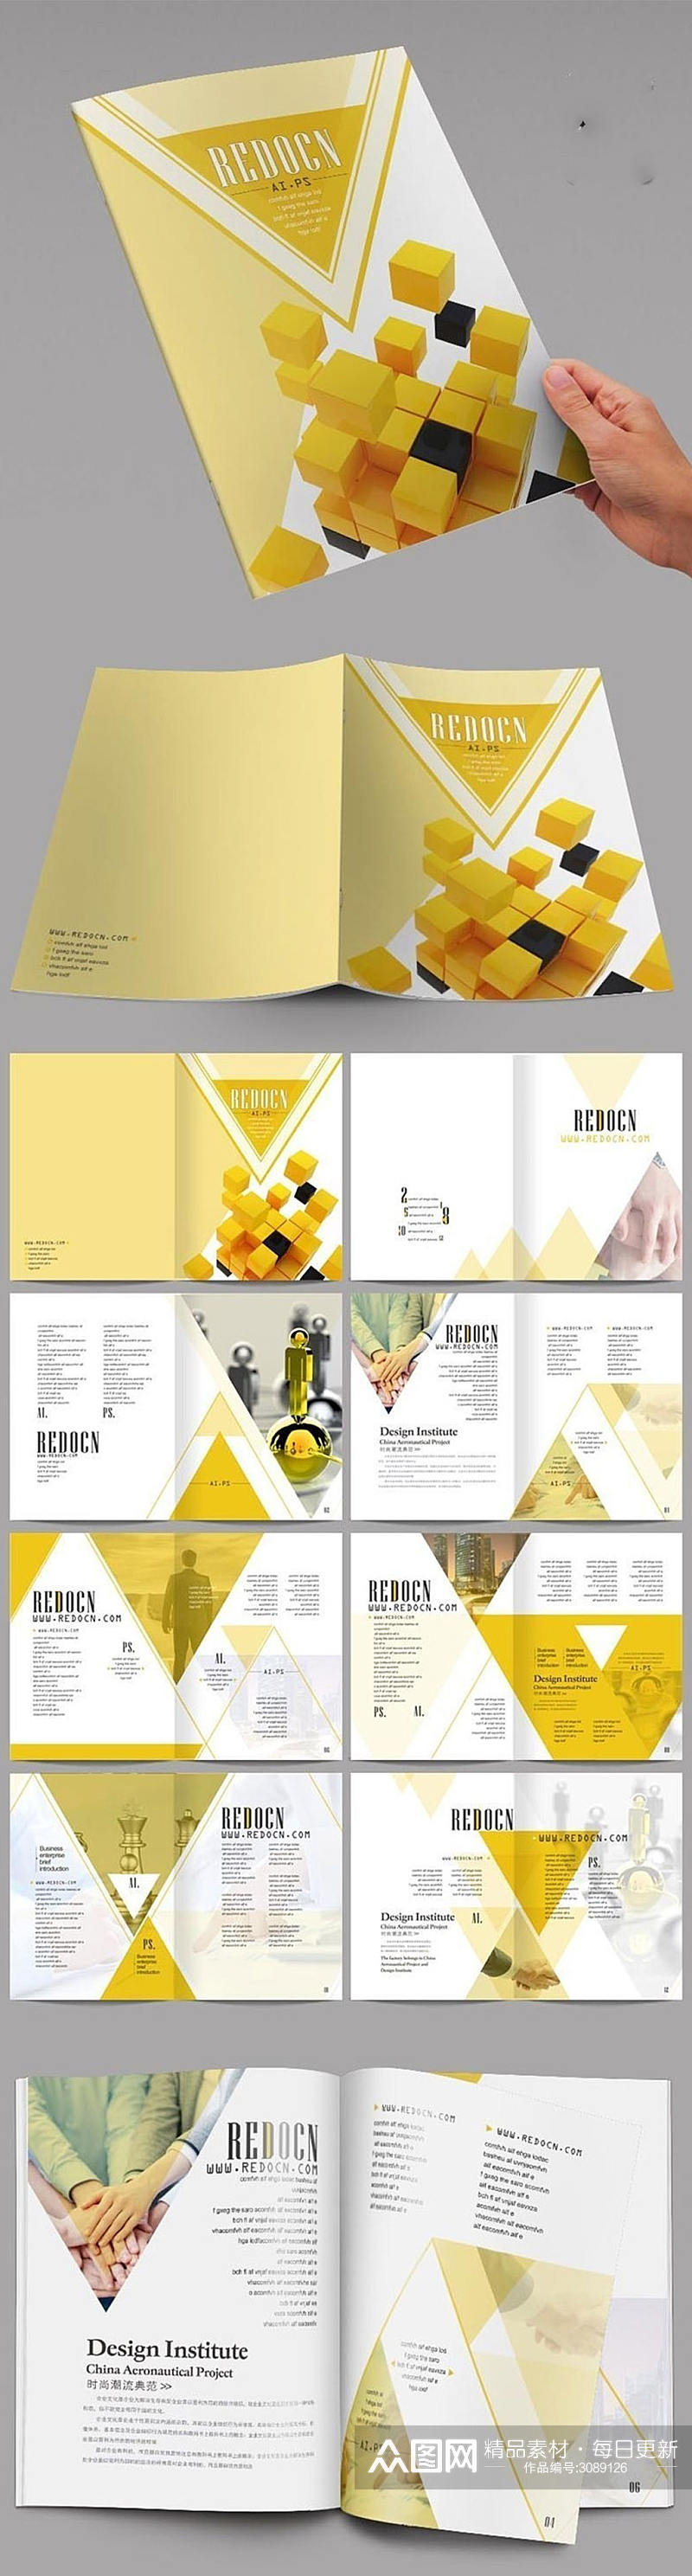 大气黄色商业画册设计素材